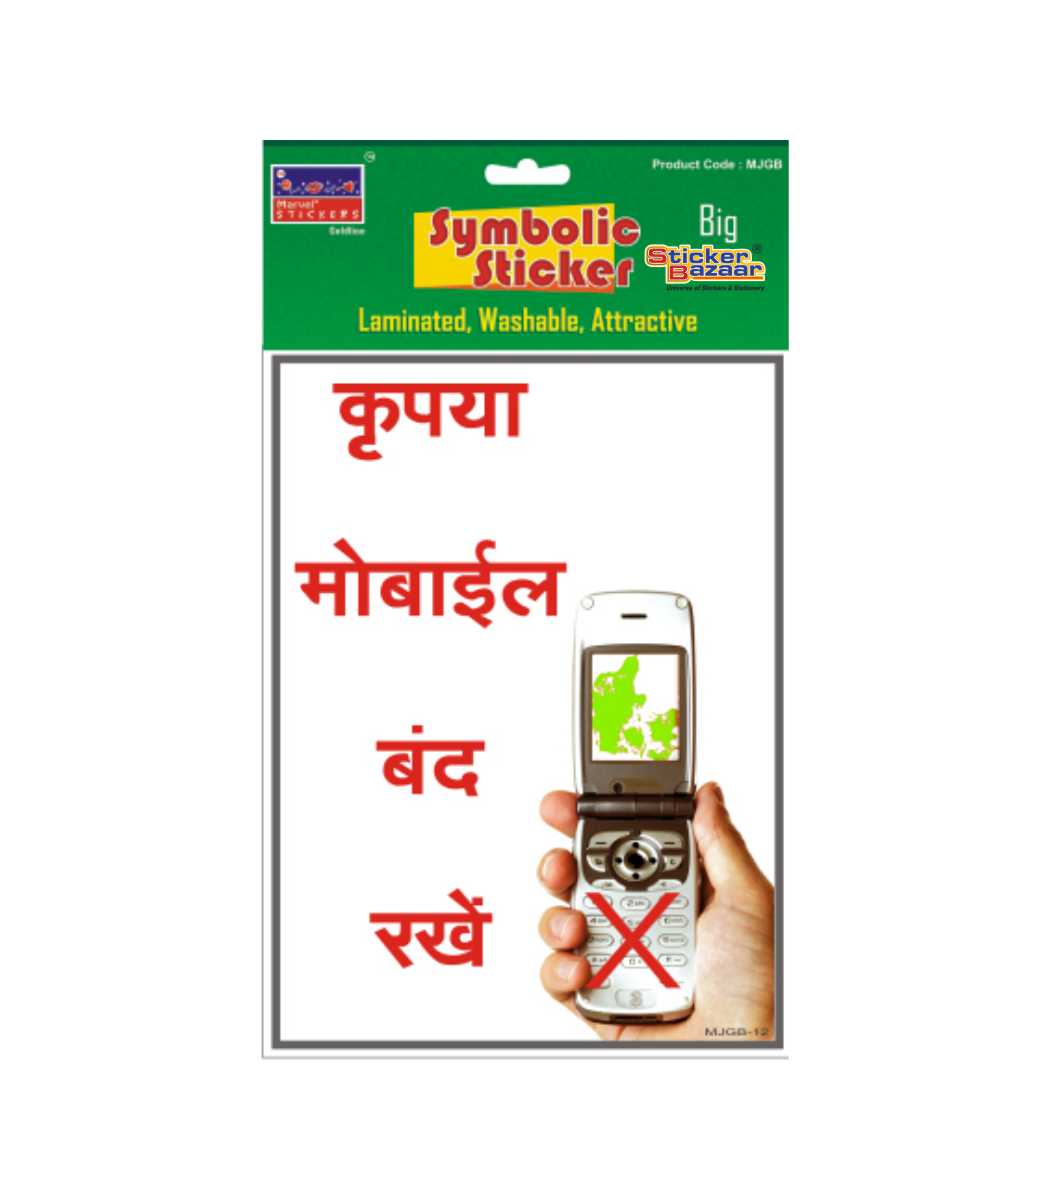 No Mobile Zone in Hindi 1 Big Symbolic Sticker